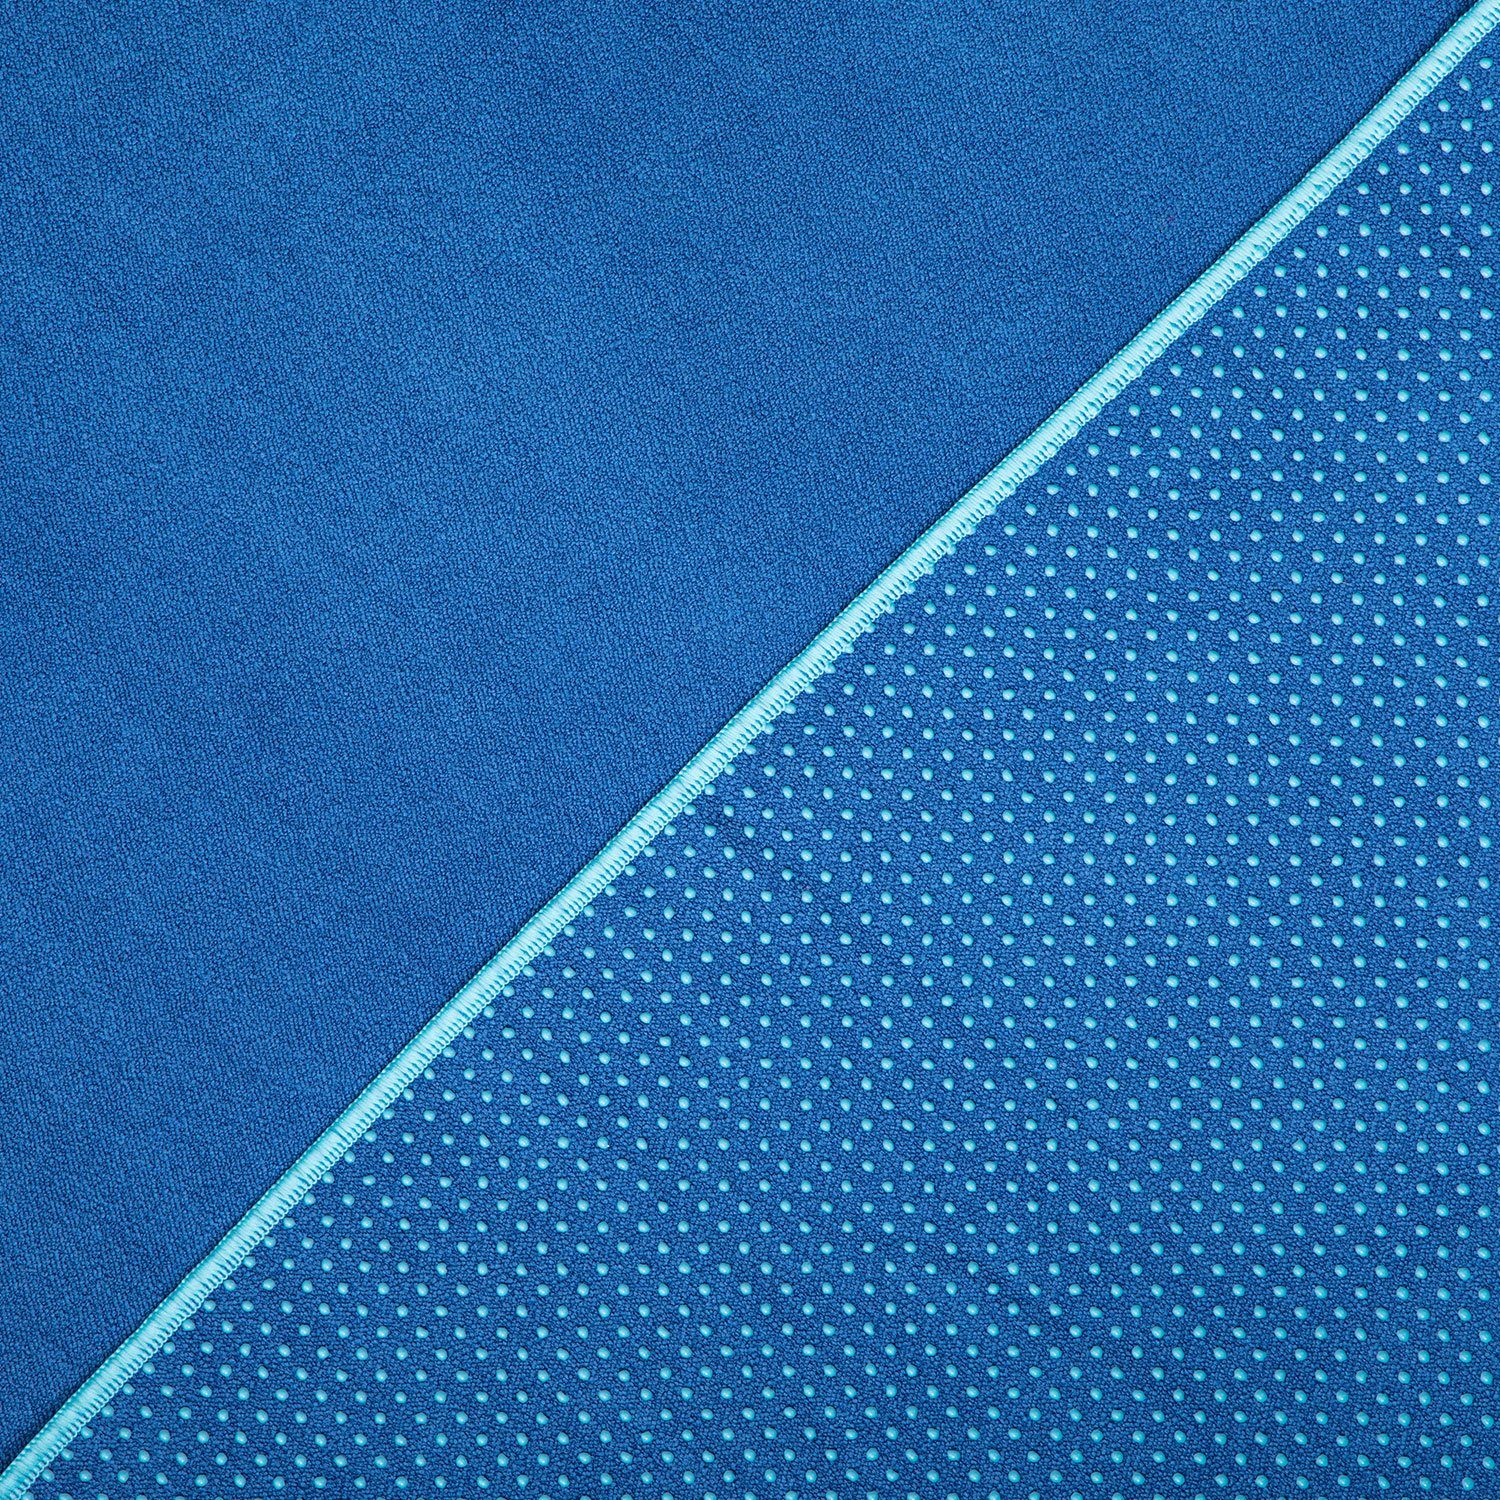 Zweifarbig ² Yogatuch GRIP - Sporthandtuch bodhi blau/aqua